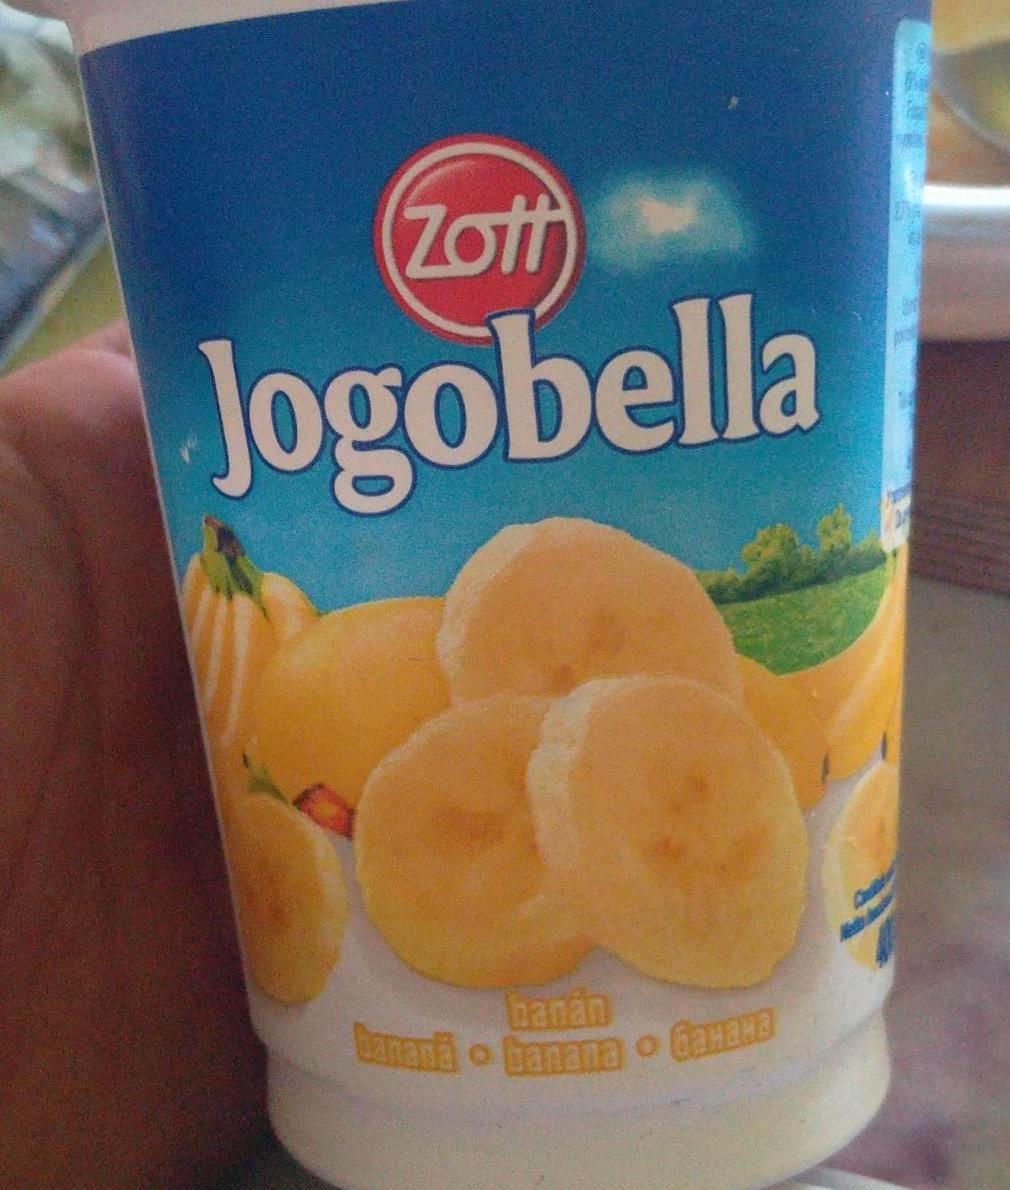 Képek - Jogobella banános Zott